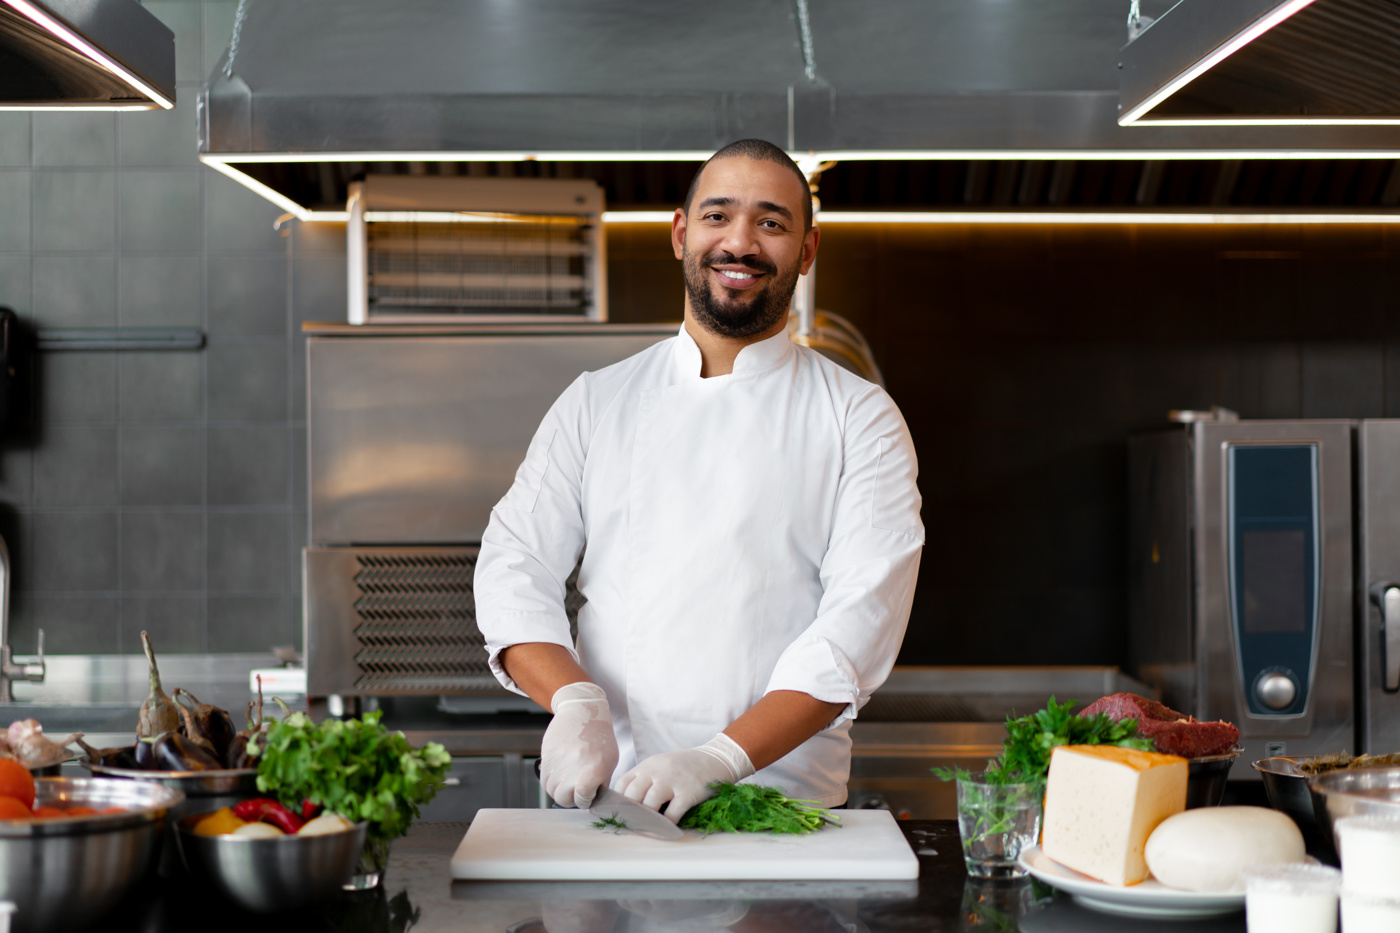 Un cuisinier diététique avec brevet fédéral se trouve dans la cuisine et prépare une soupe saine.